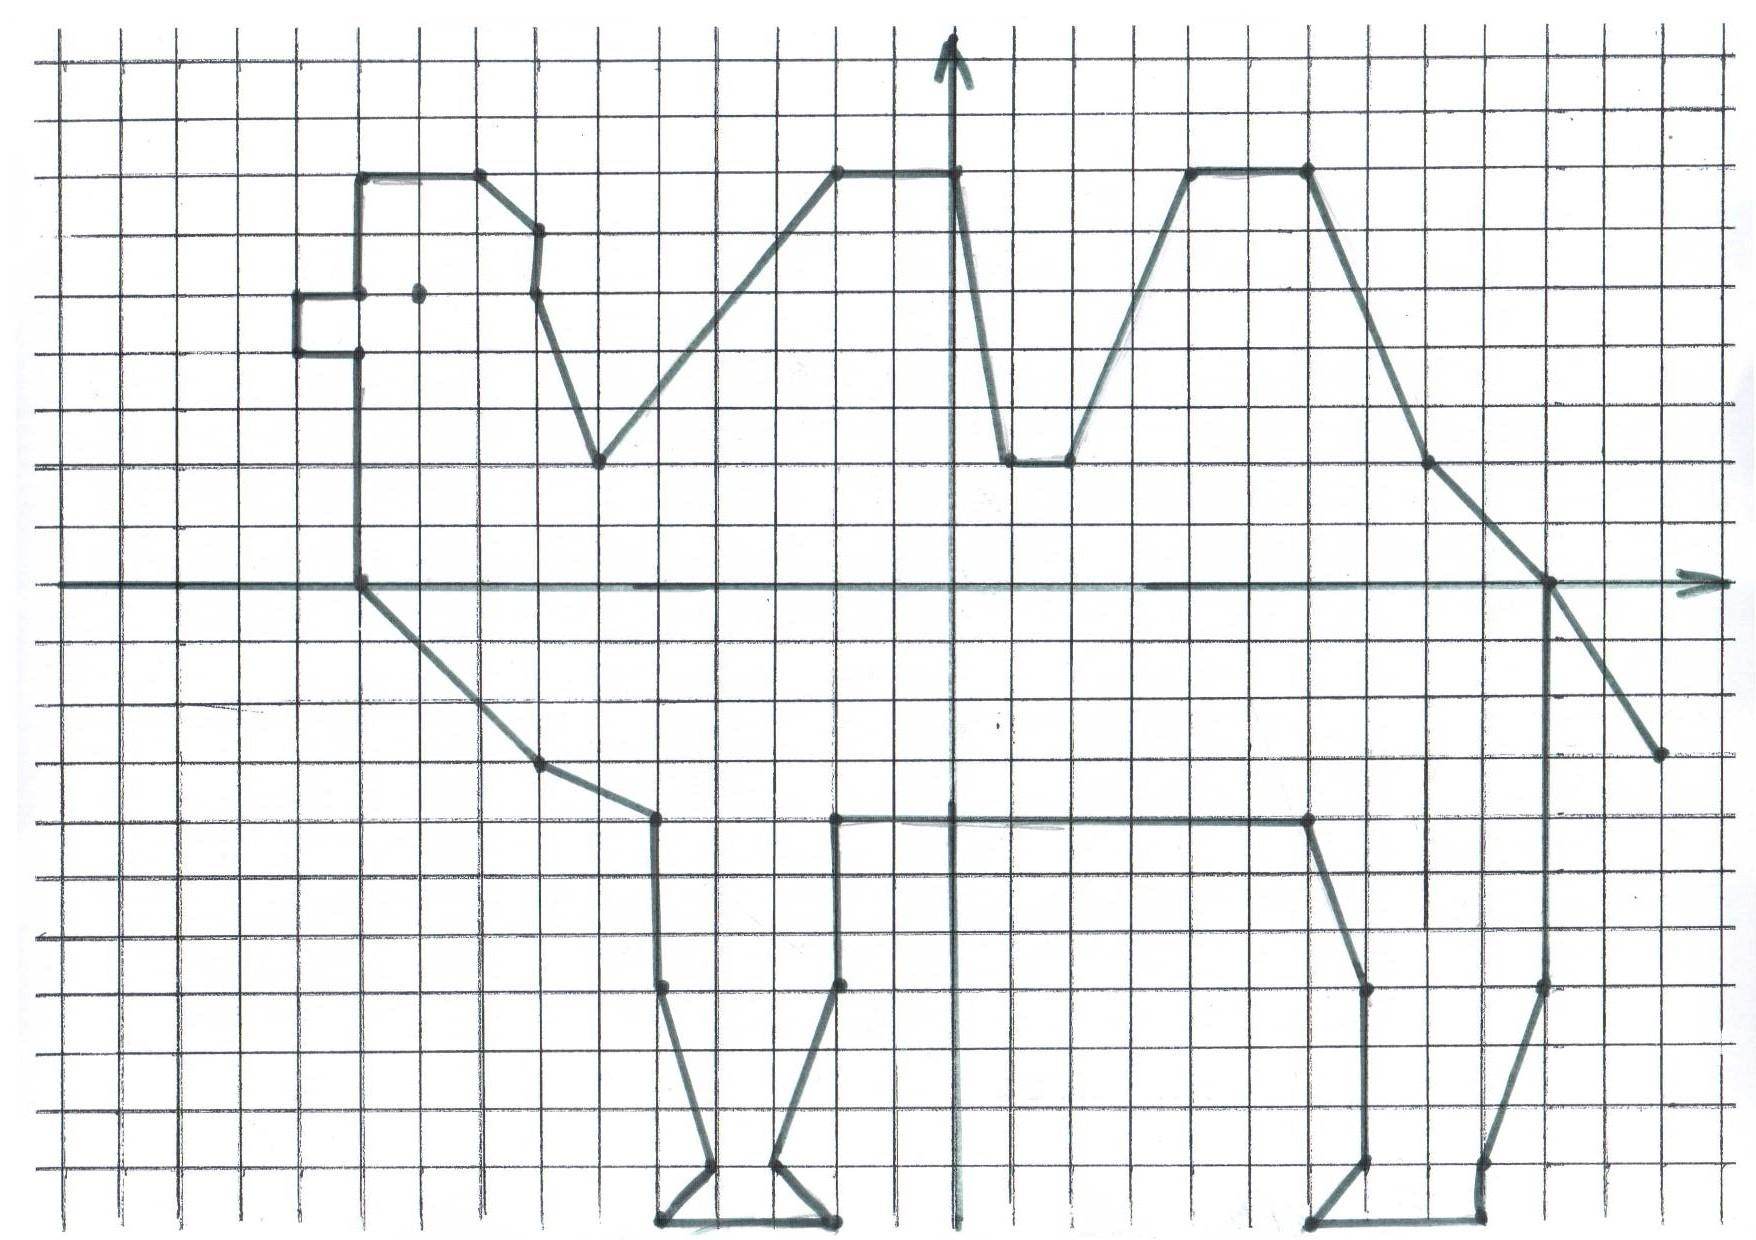 Координатная плоскость замкнутая ломаная. Рисунки на координатной плоскости. Животные на координатной плоскости. Рисунок на координатной плоскости с координатами. Рисунок верблюда на координатной плоскости.